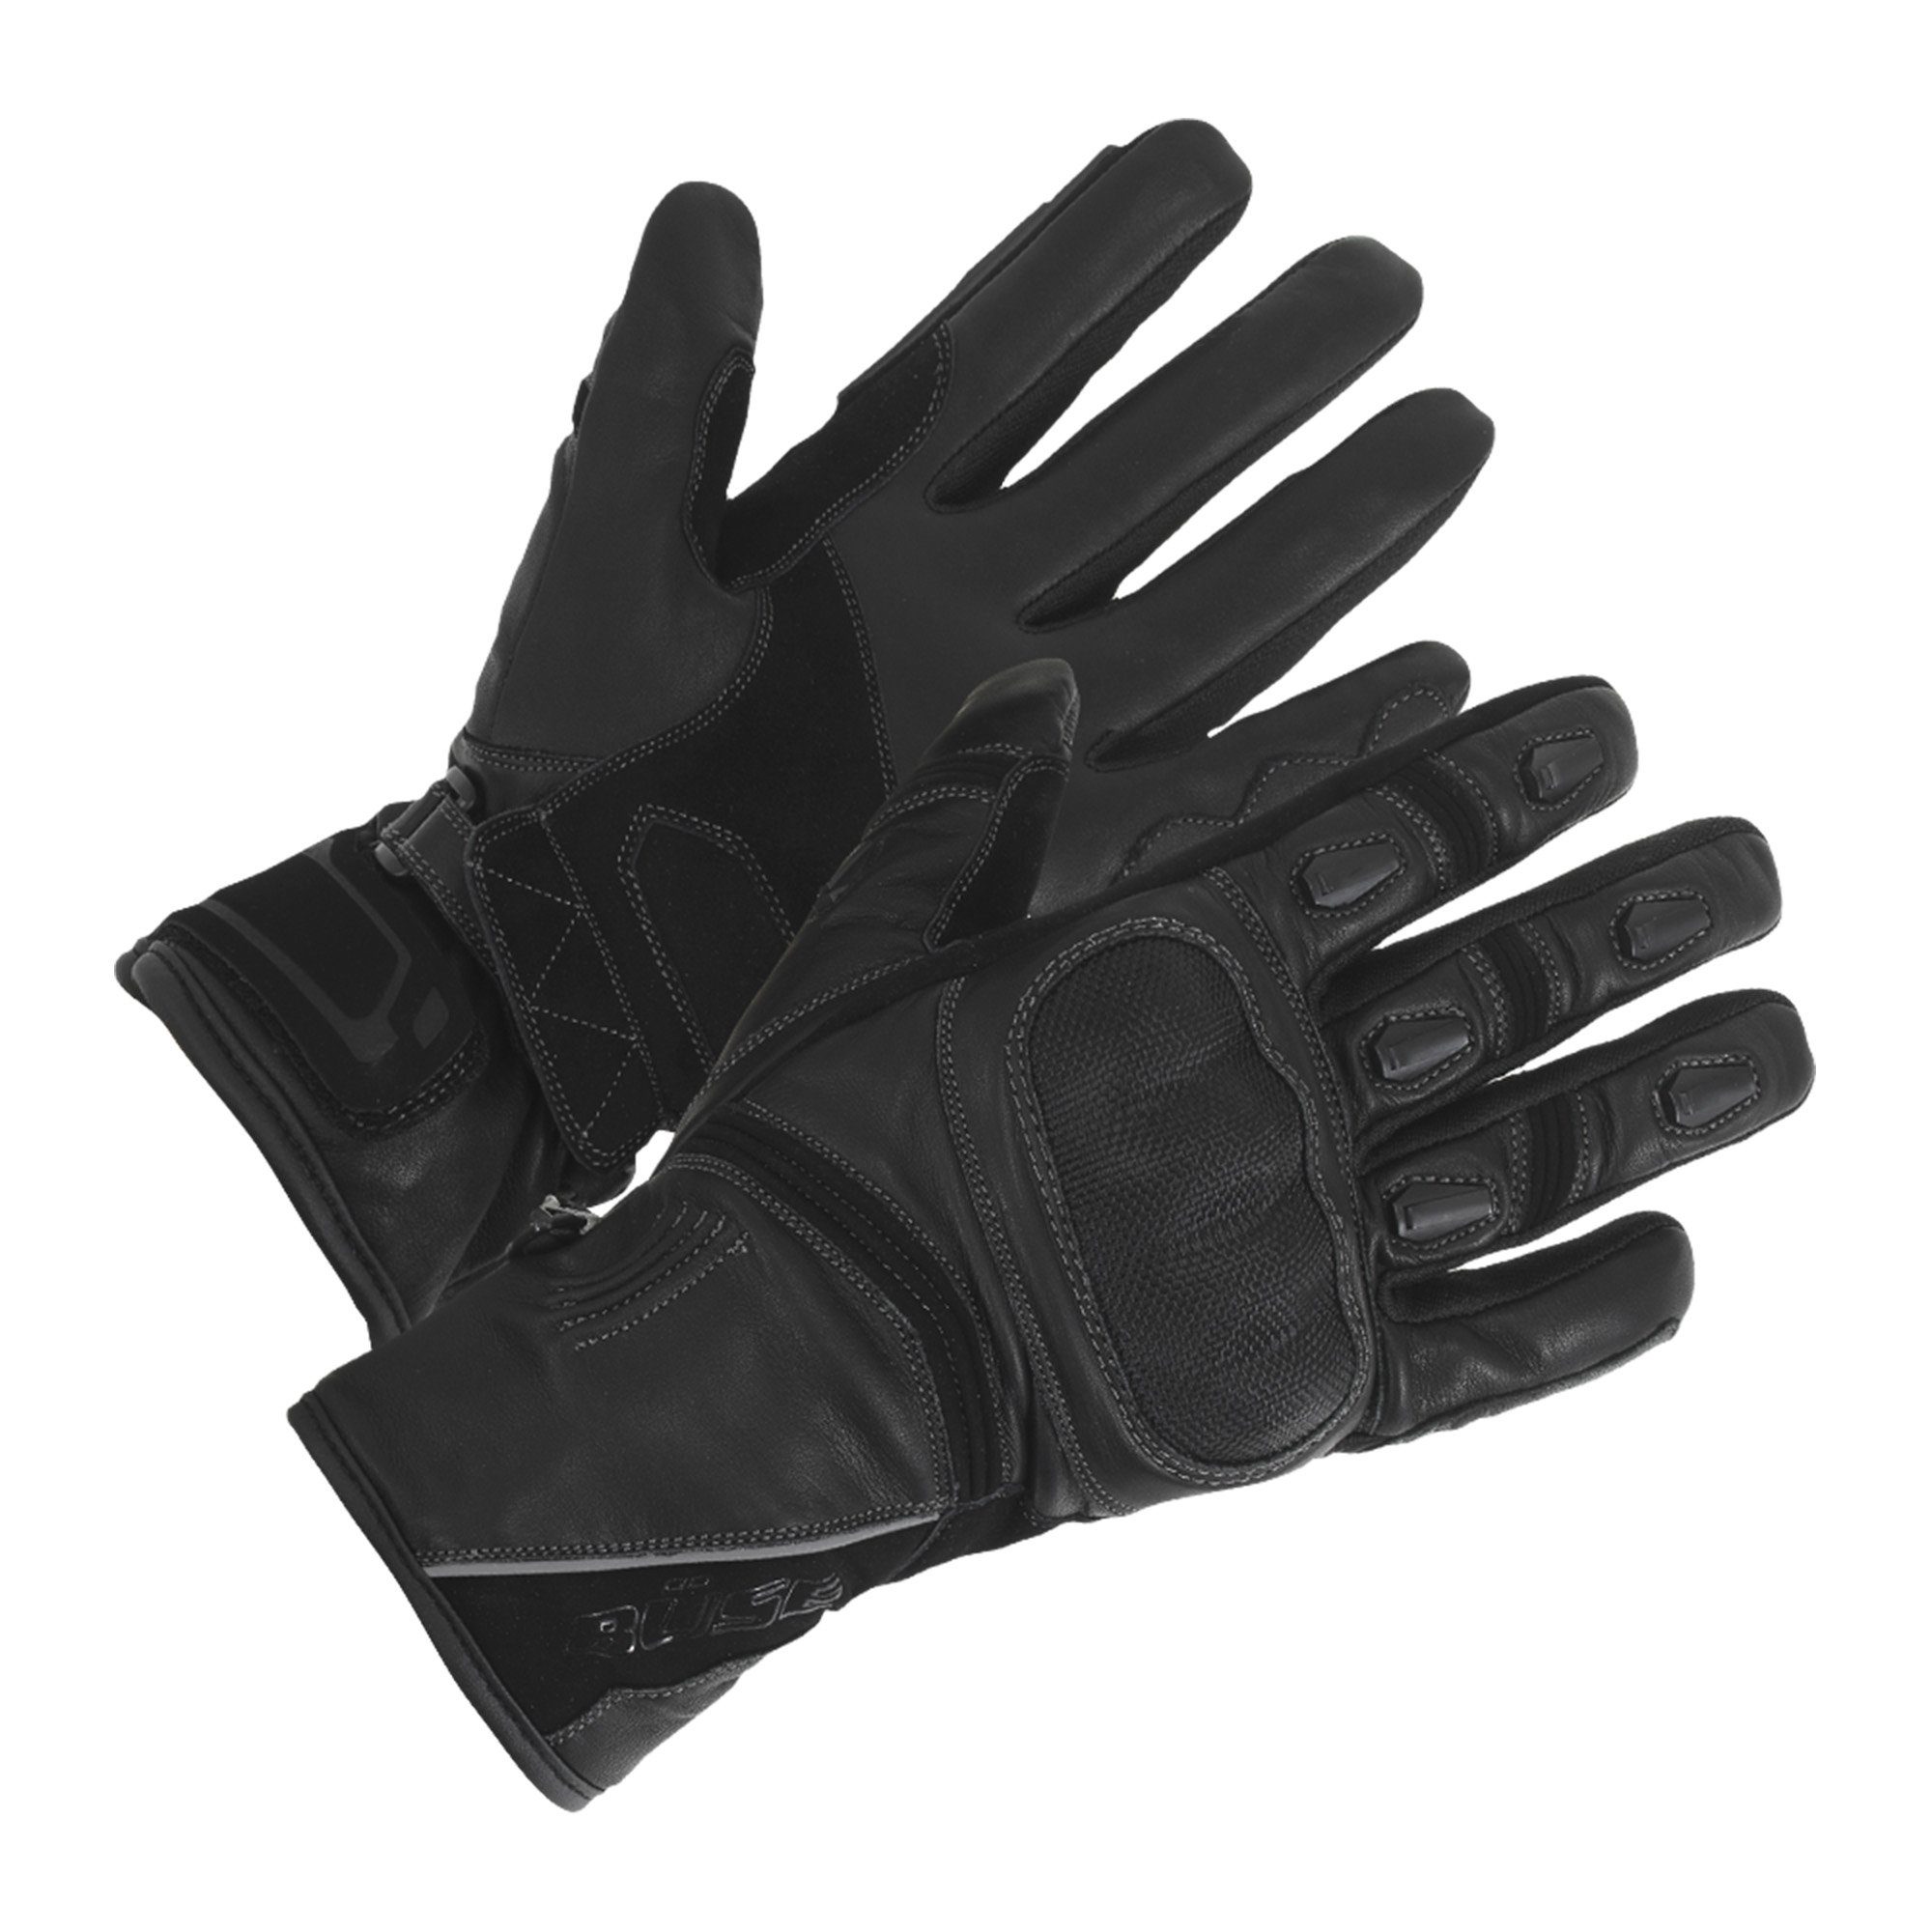 Büse Motorradhandschuhe Büse Ascari Touring Protektoren schwarz atmungsaktiv mit Leder wasserdicht winddicht Handschuh